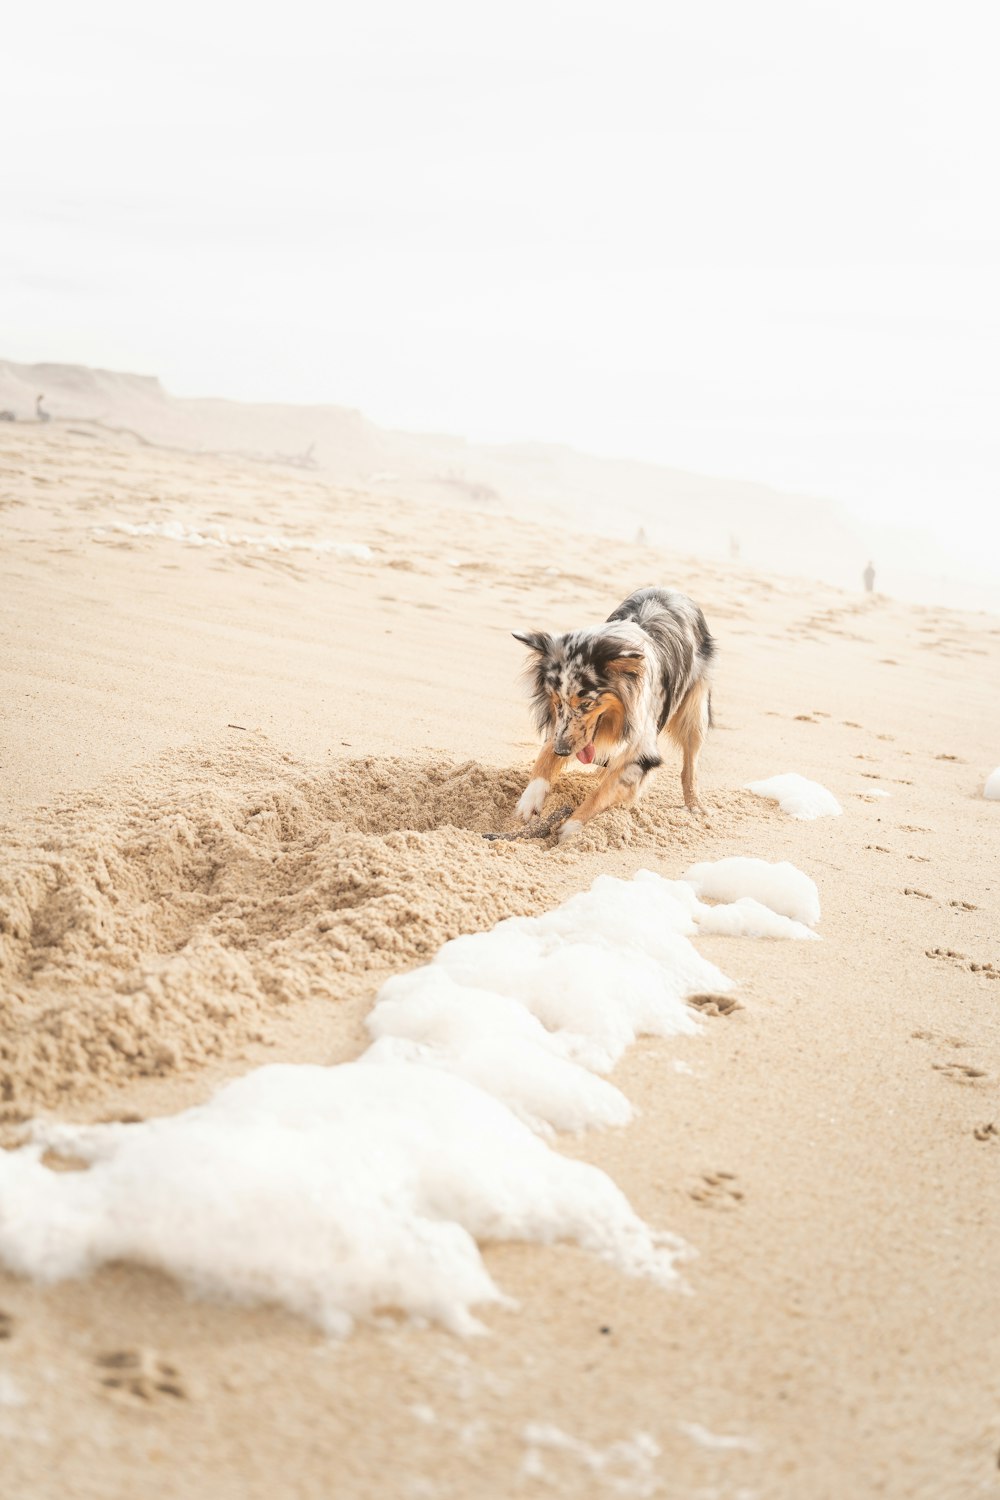 cane a pelo lungo nero e marrone su sabbia bianca durante il giorno